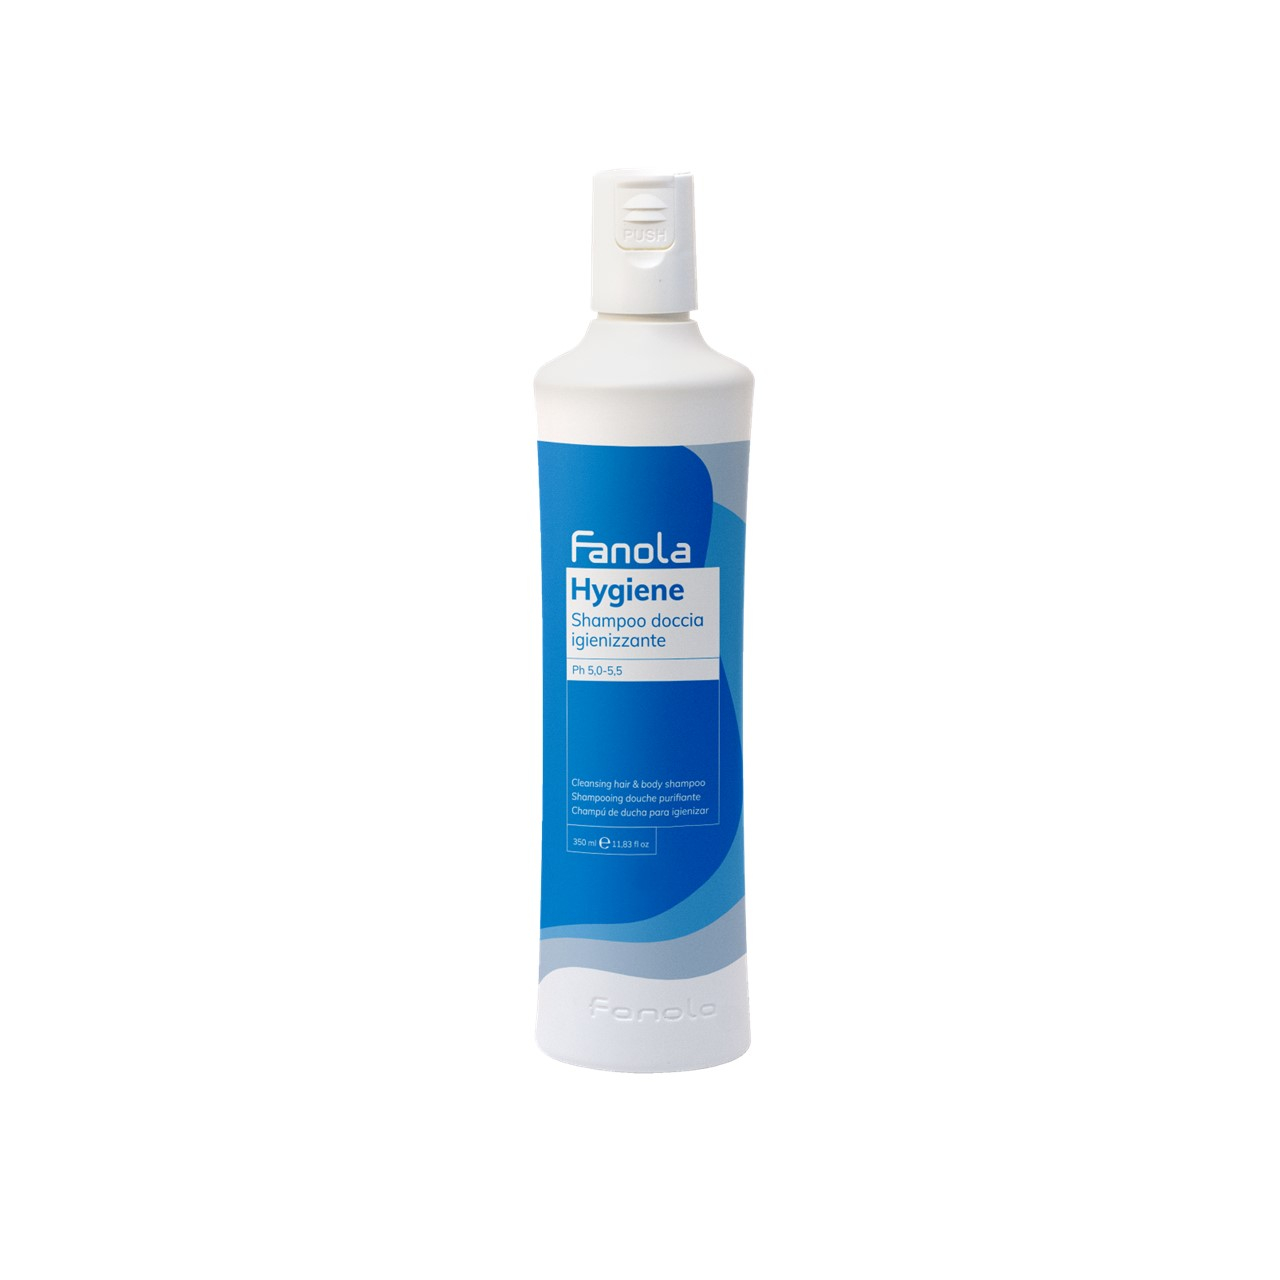 Fanola Hygiene Cleansing Hair & Body Shampoo 350ml (11.83 fl oz)